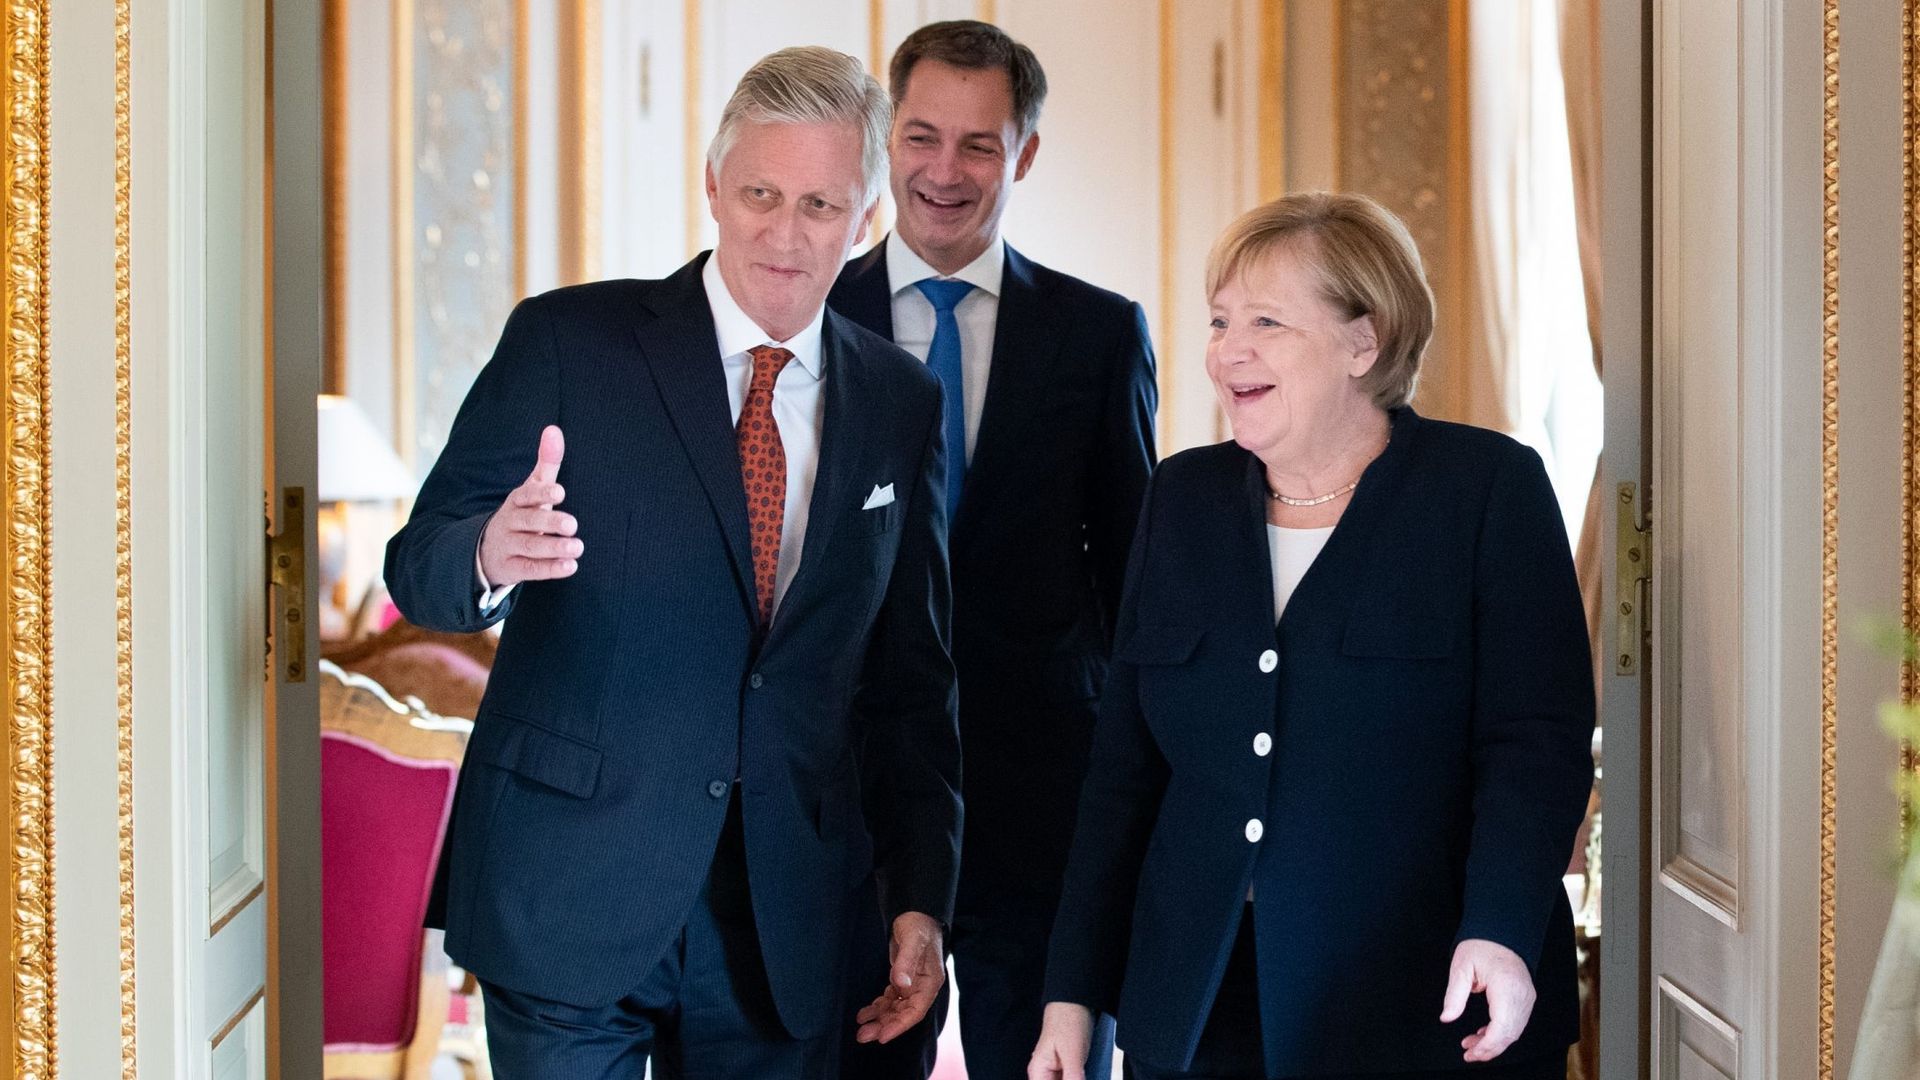 Le roi Philippe et le Premier ministre Alexander De Croo ont reçu la chancelière Angela Merkel au palais de Laeken.